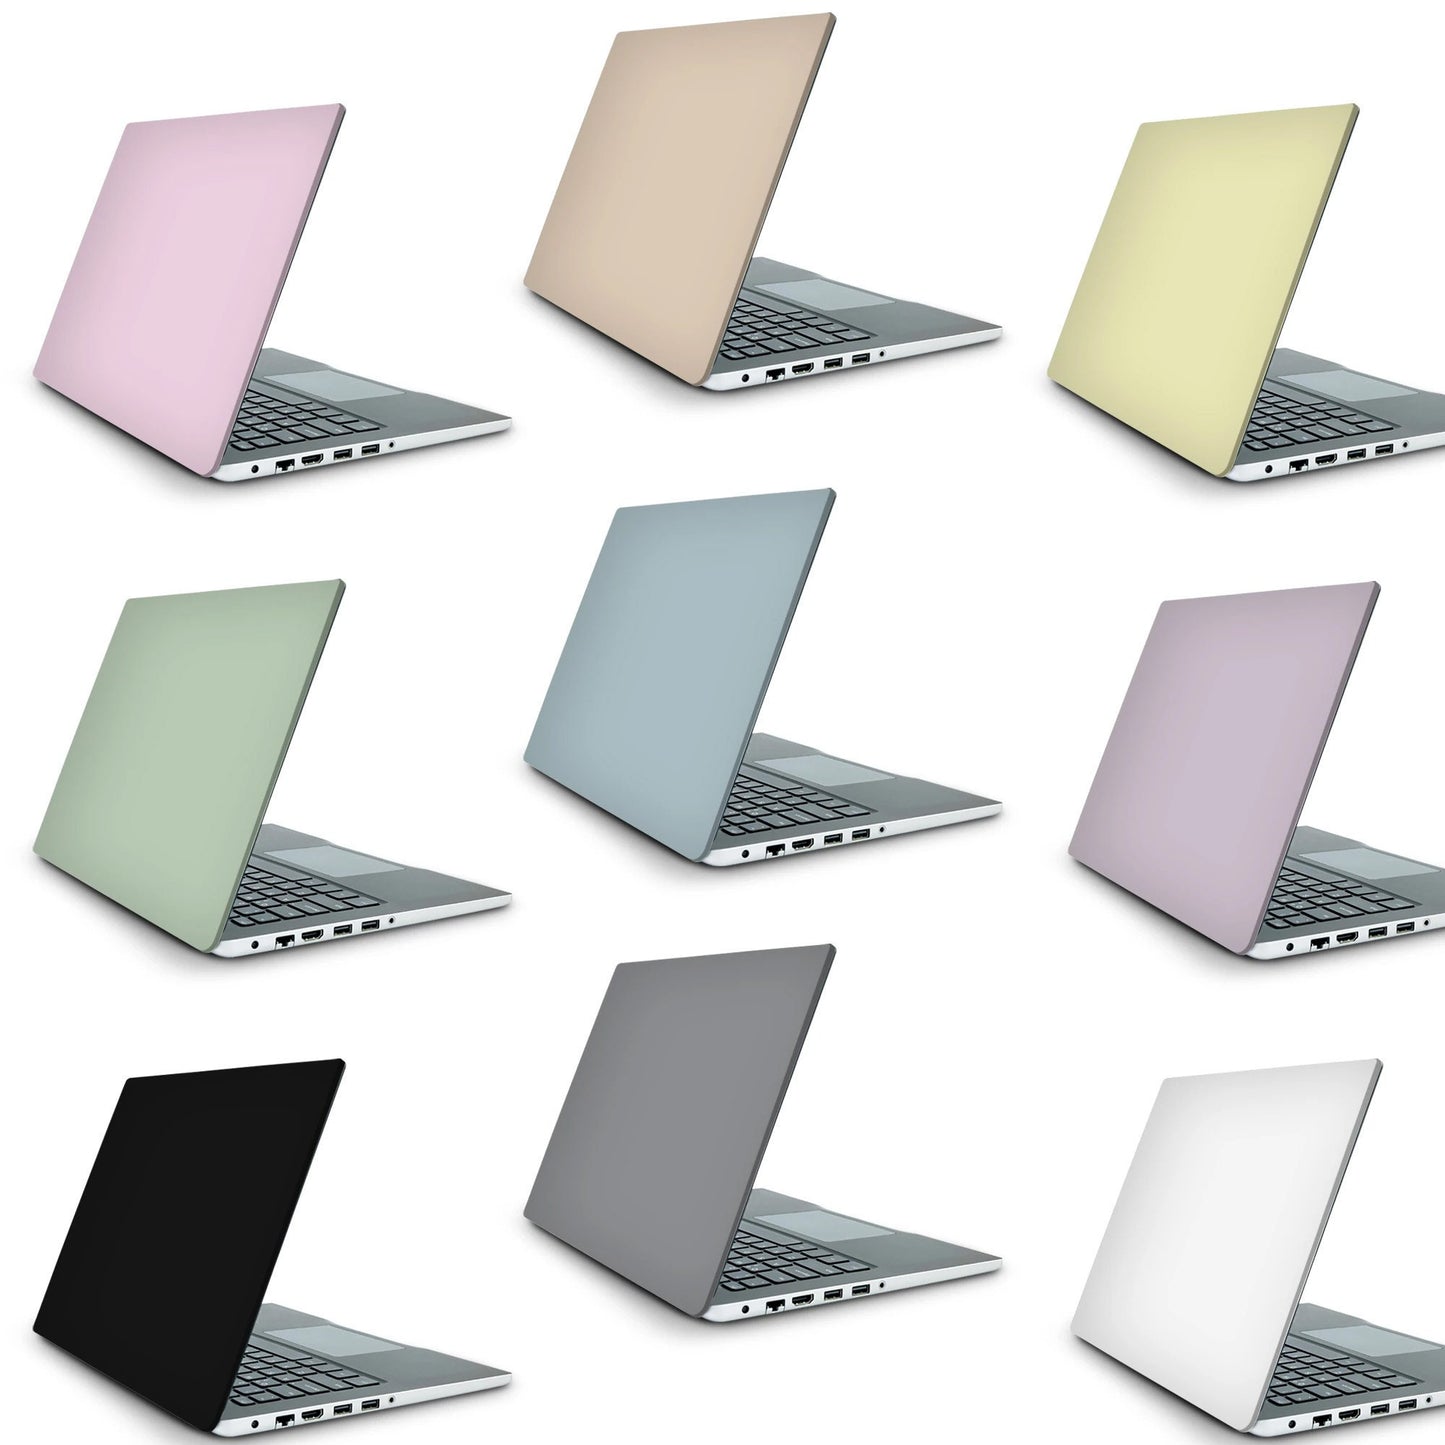 Butterfly Wings Laptop Skin, Laptop Cover, Laptop Skins, Removable Laptop Skins, Laptop Decal, Customized Laptop Skin, Laptop Stickers 394